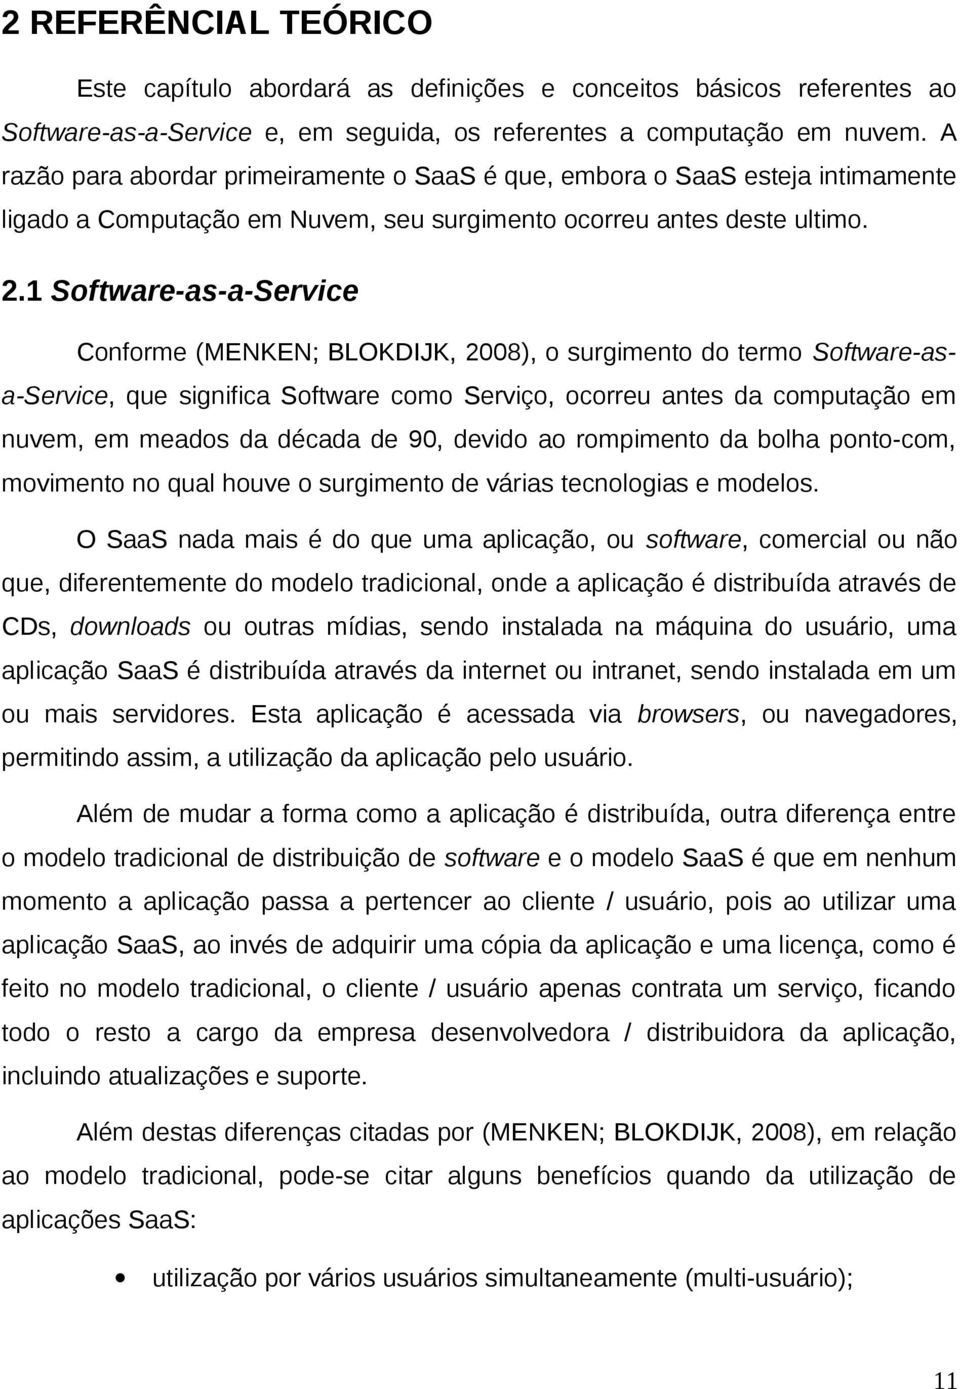 1 Software-as-a-Service Conforme (MENKEN; BLOKDIJK, 2008), o surgimento do termo Software-asa-Service, que significa Software como Serviço, ocorreu antes da computação em nuvem, em meados da década